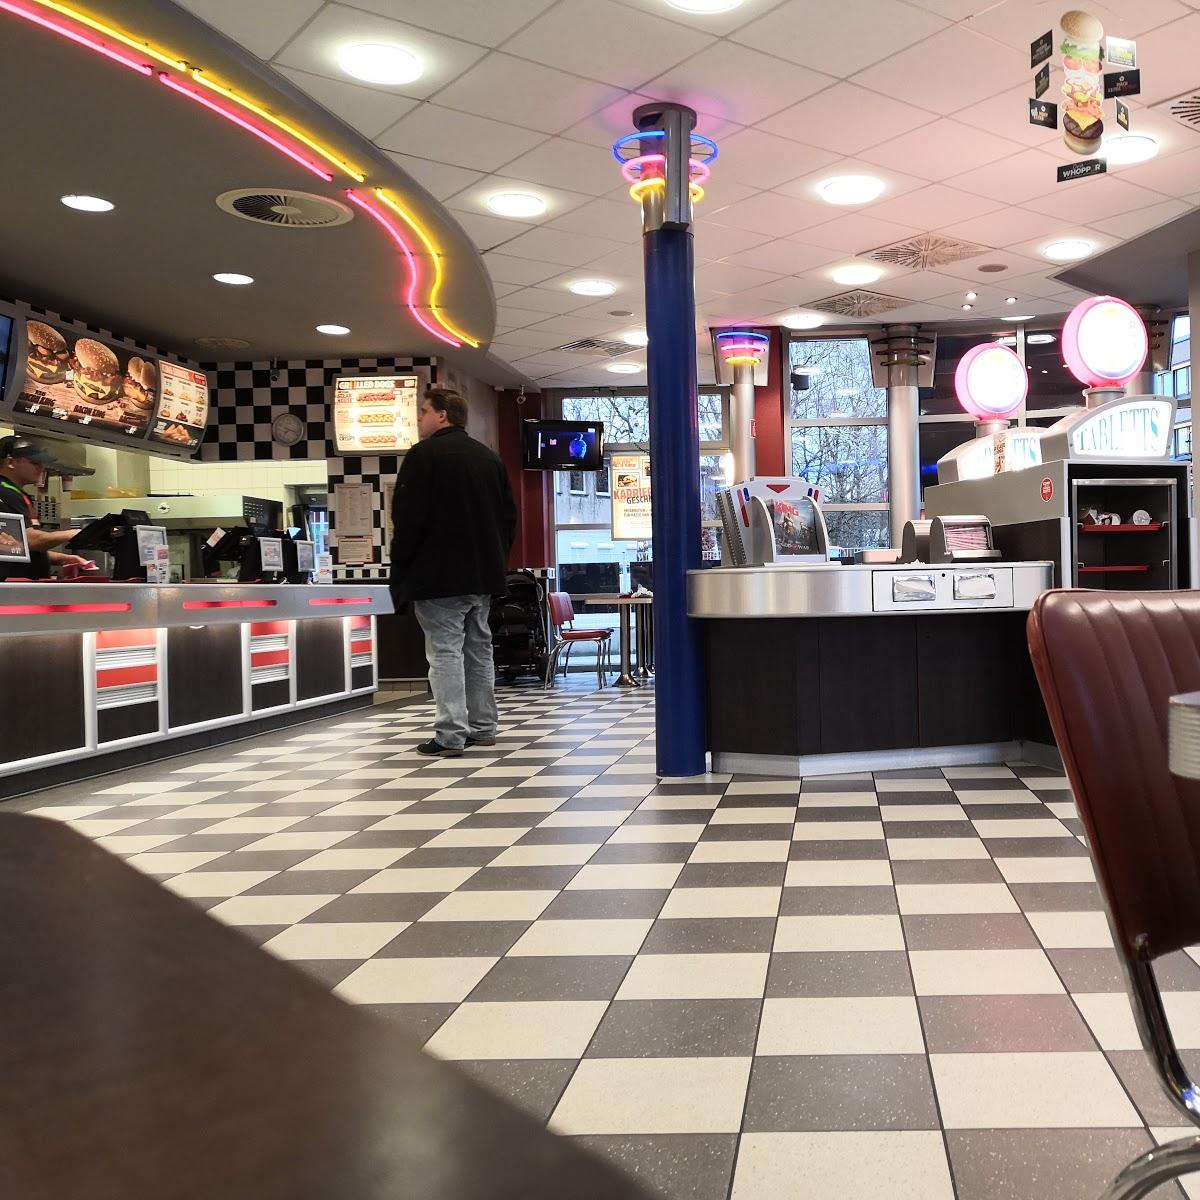 Restaurant "Burger King" in Bottrop